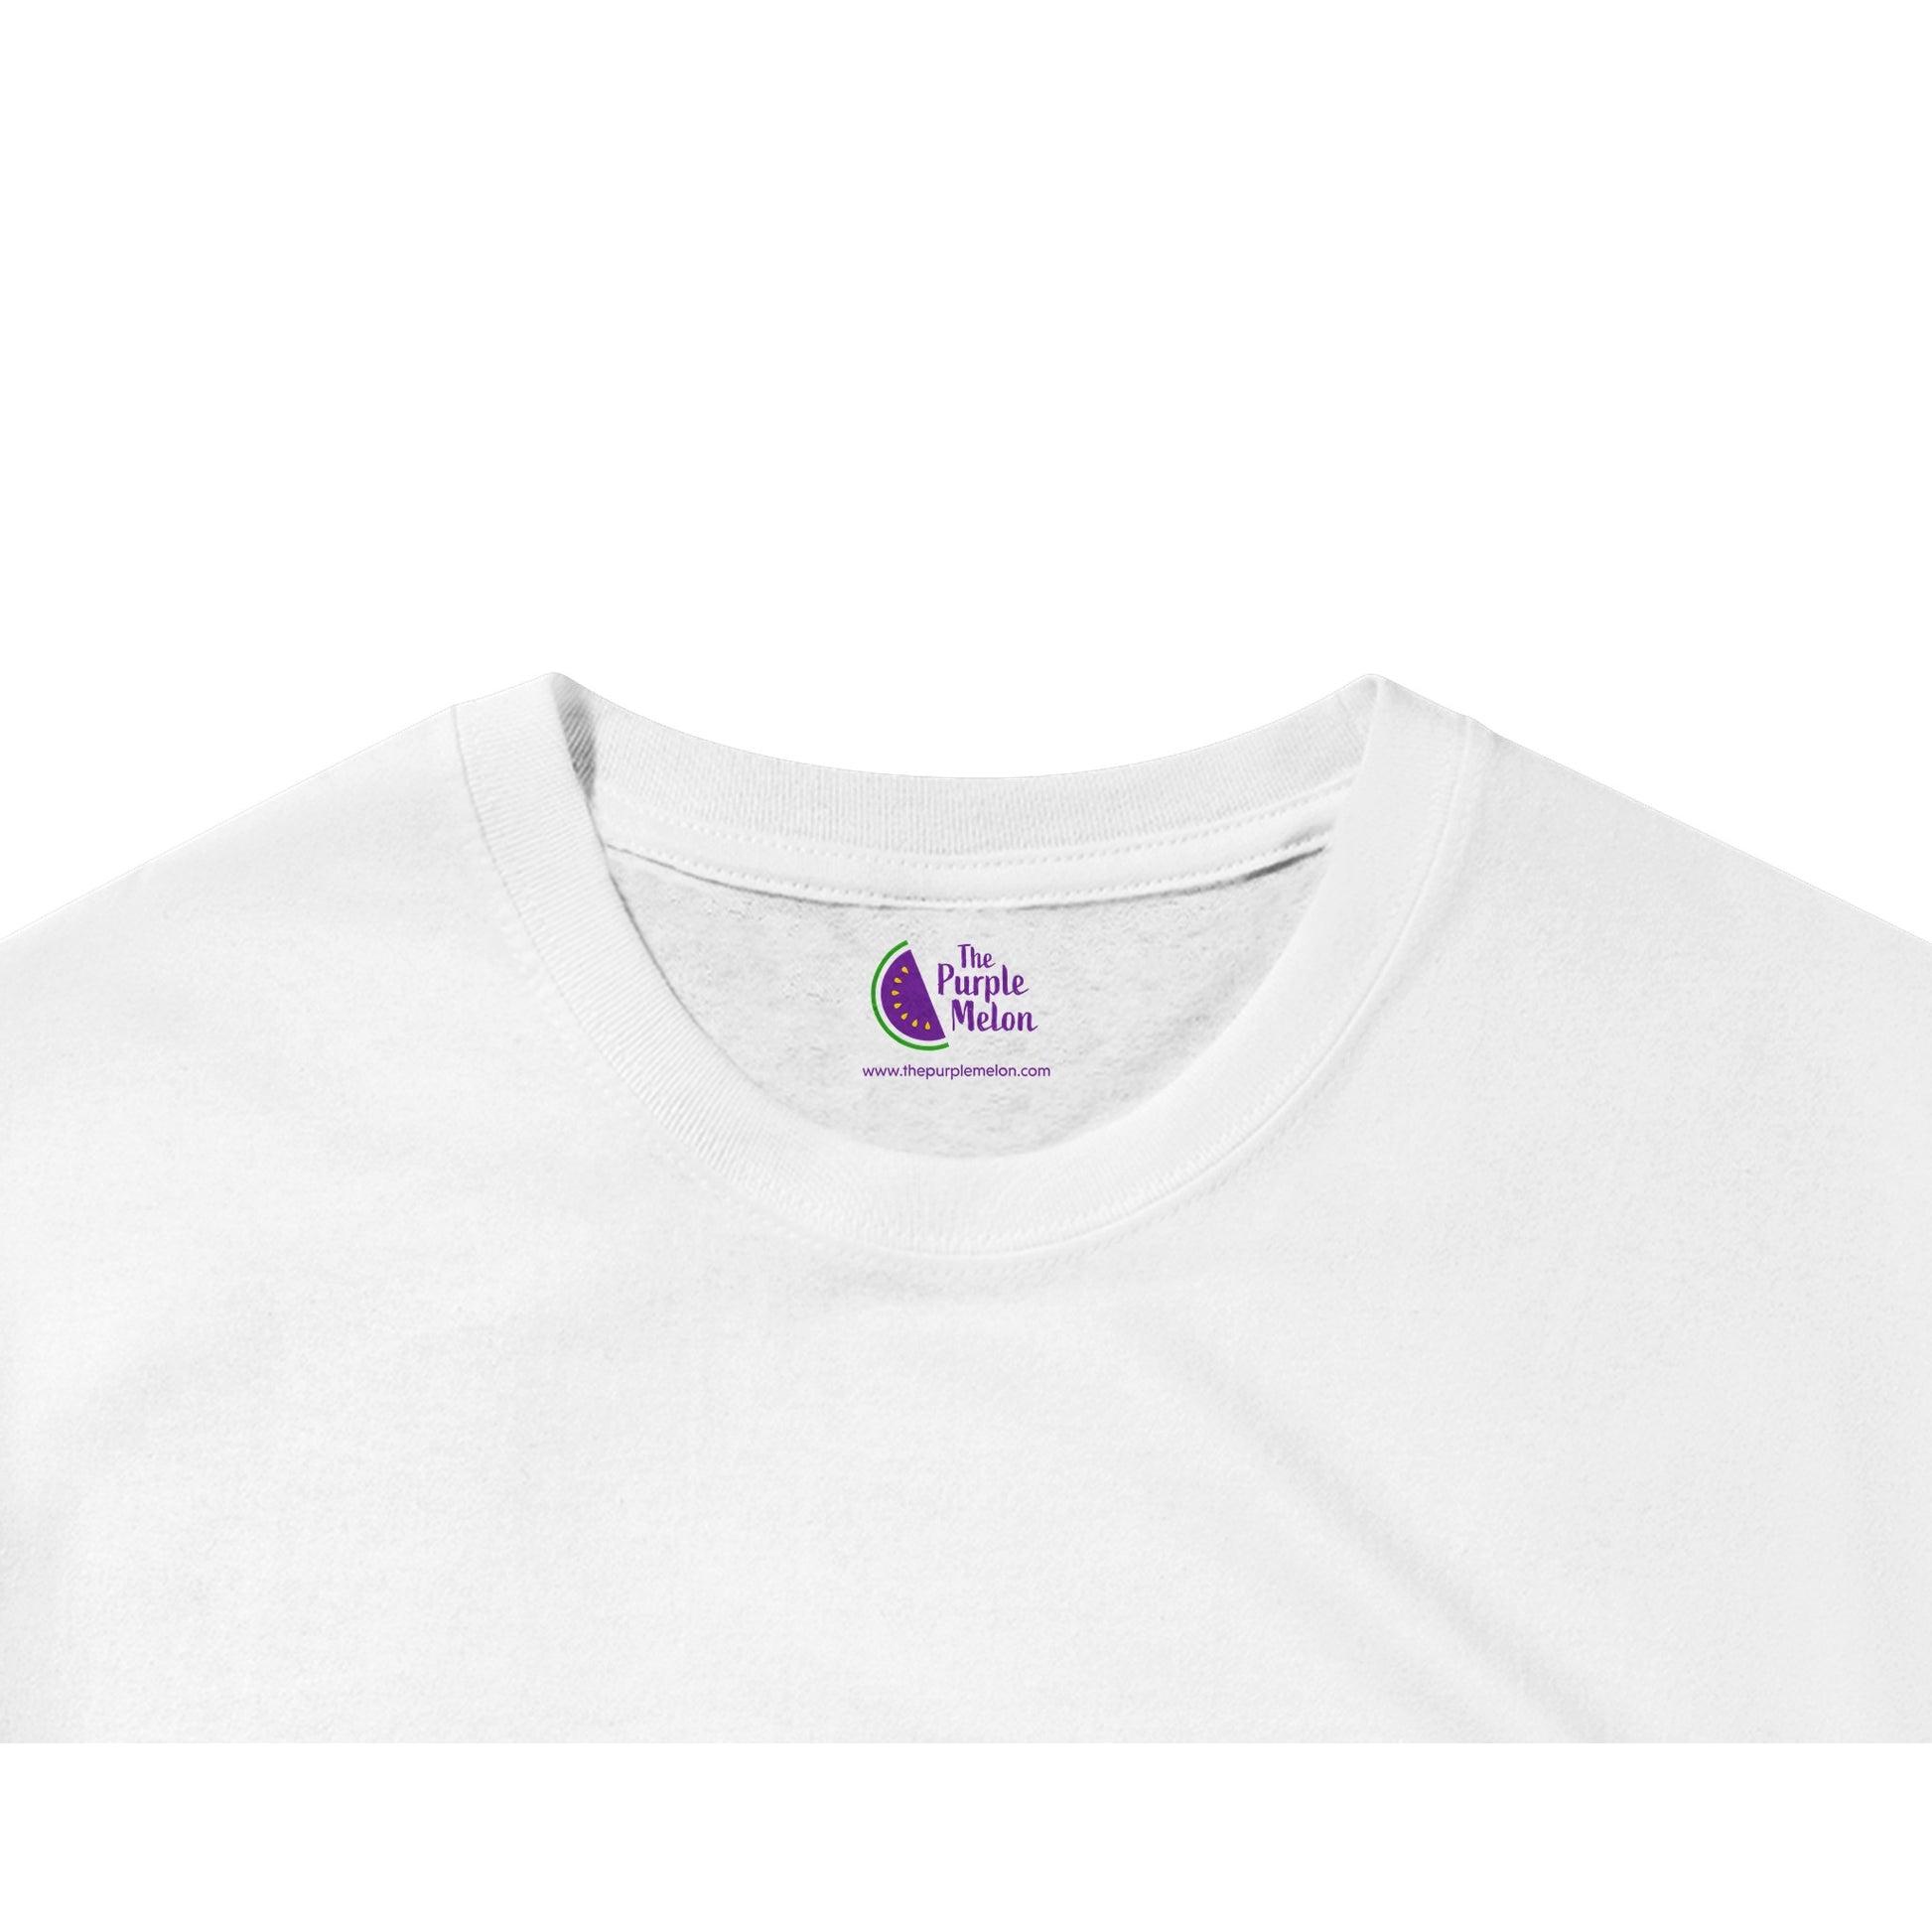 the purple melon t-shirt neck label